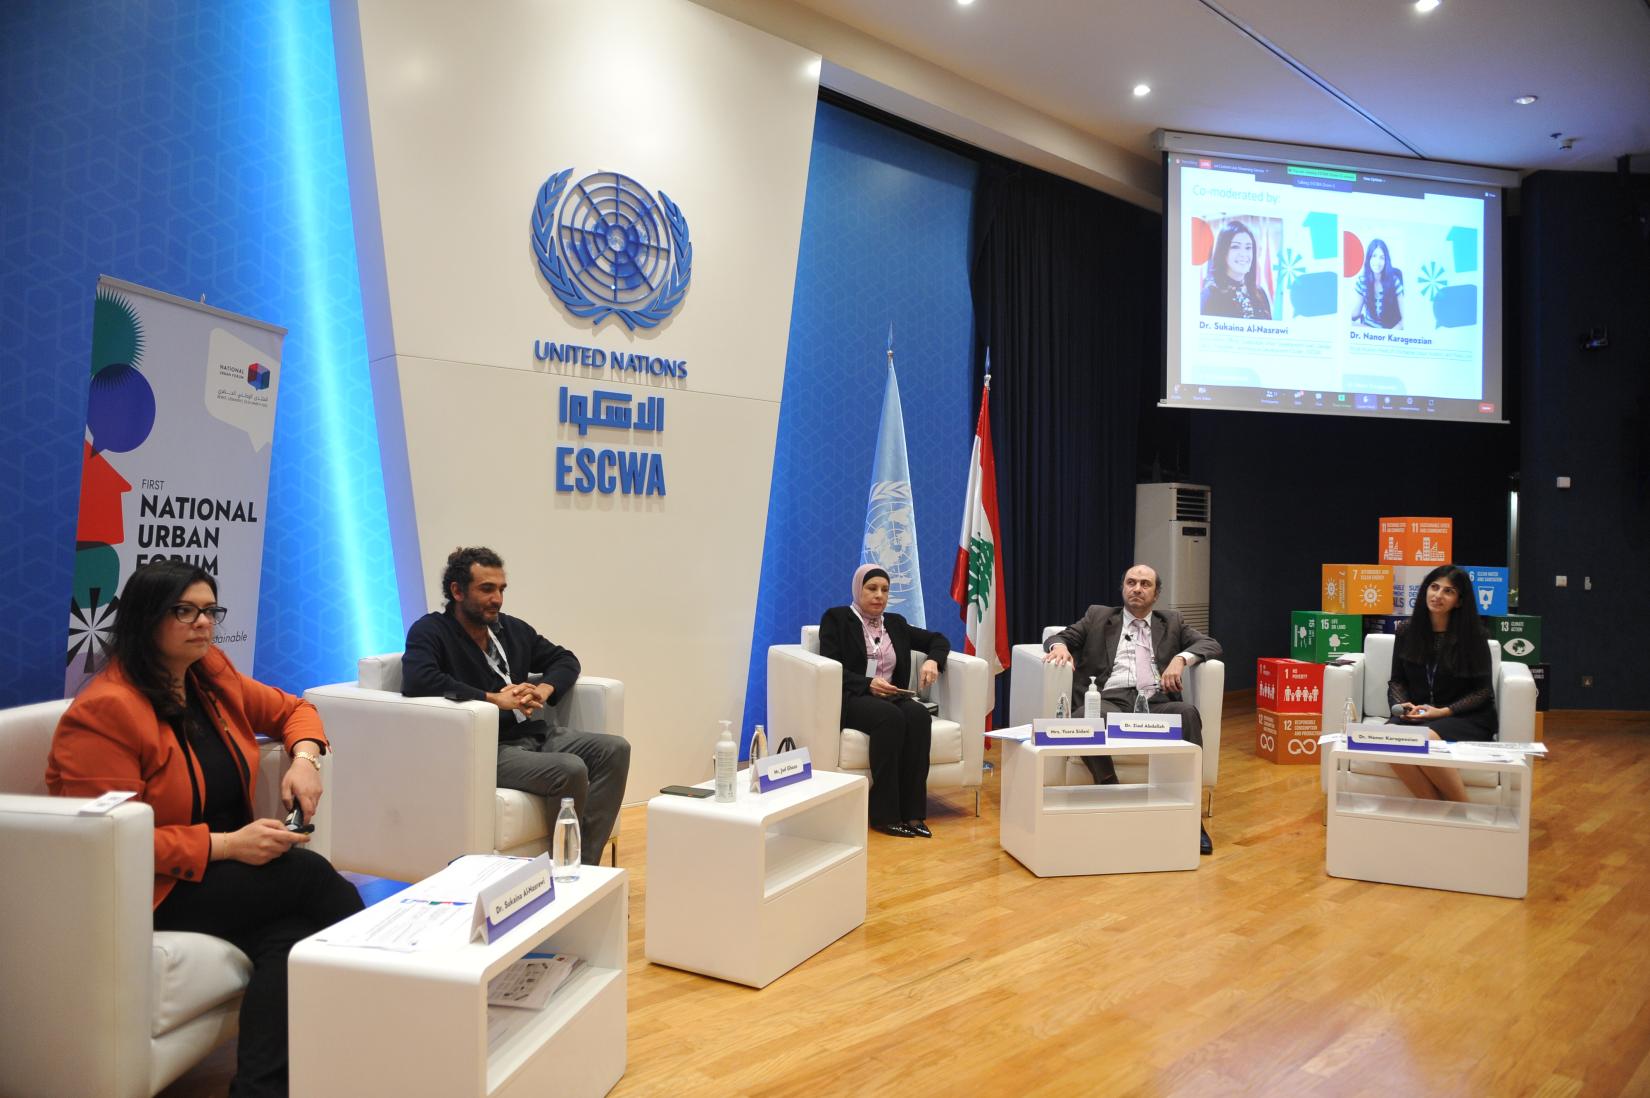 انطلاق أعمال المنتدى الحضري الوطني الأوّل في لبنان إطلاق تقرير برنامج الأمم المتحدة للمستوطنات البشرية والإسكوا عن حالة المدن اللبنانية